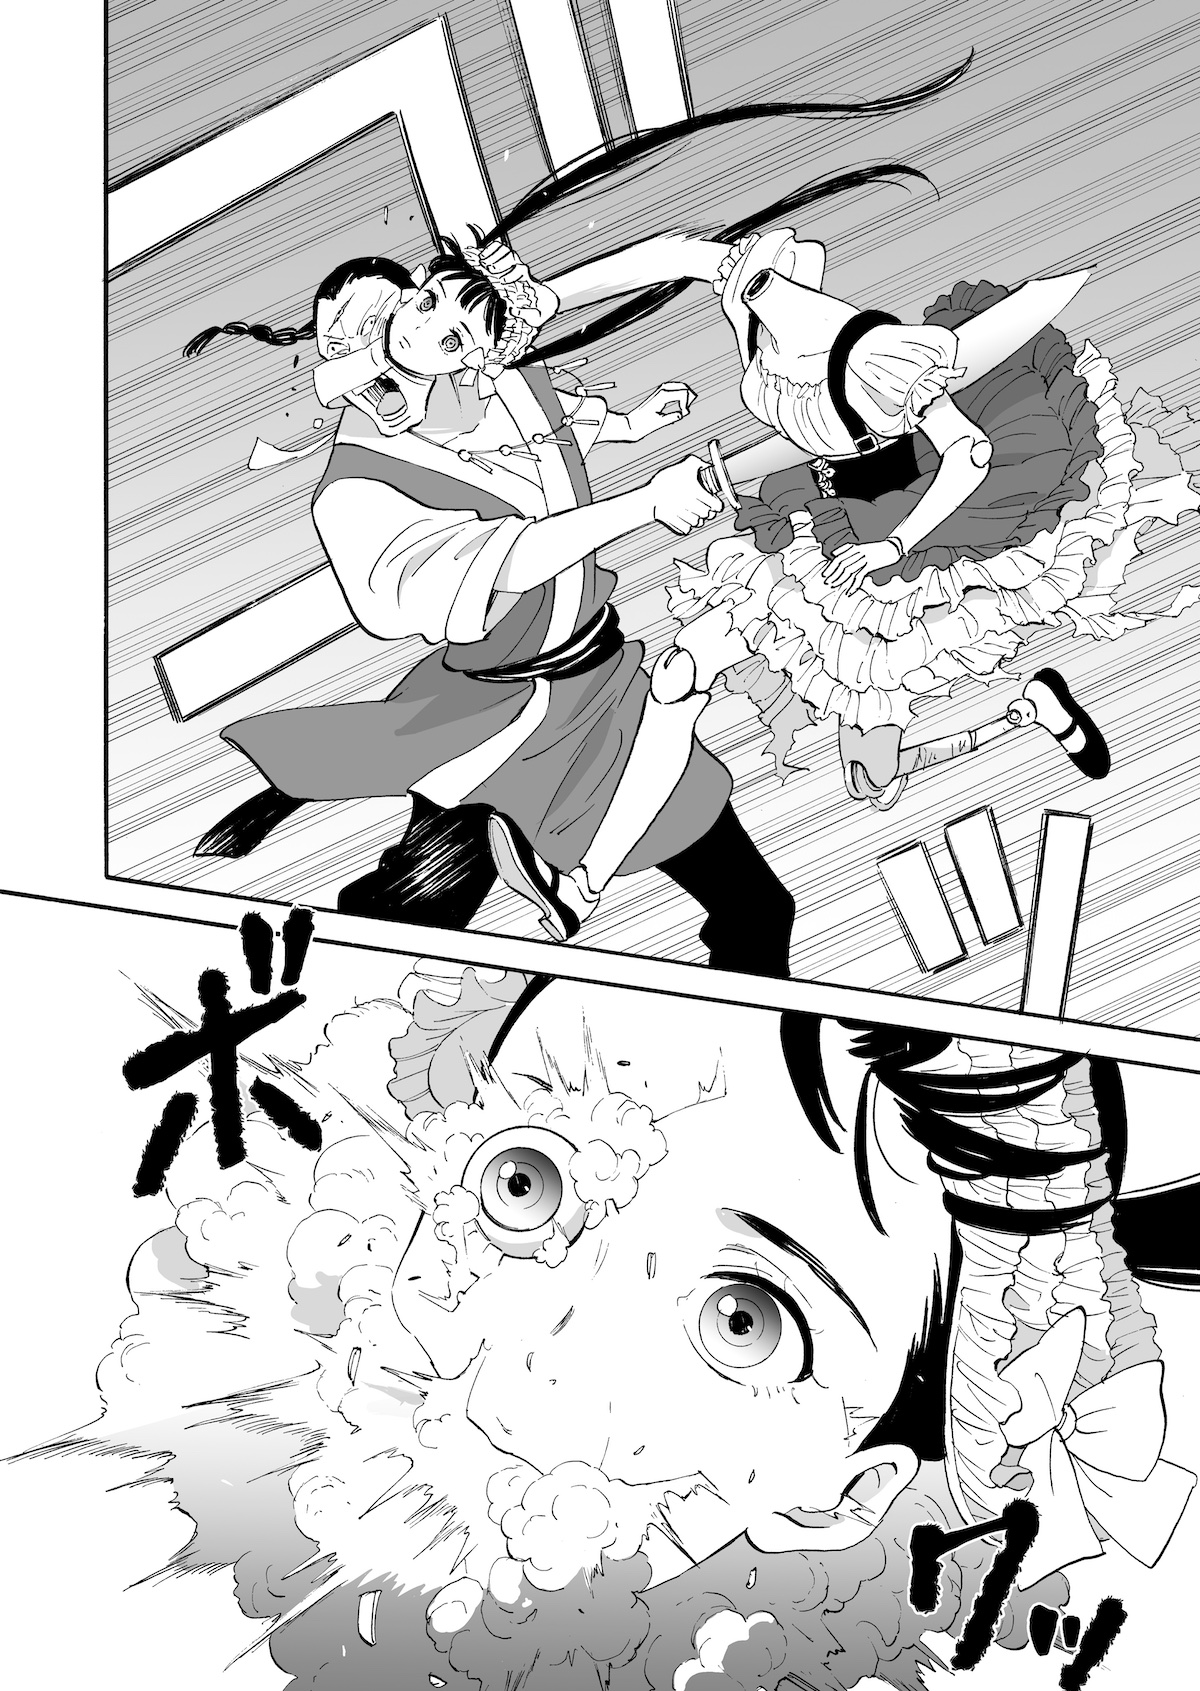 【漫画】全身武器の球体関節人形がパイを届ける話の画像